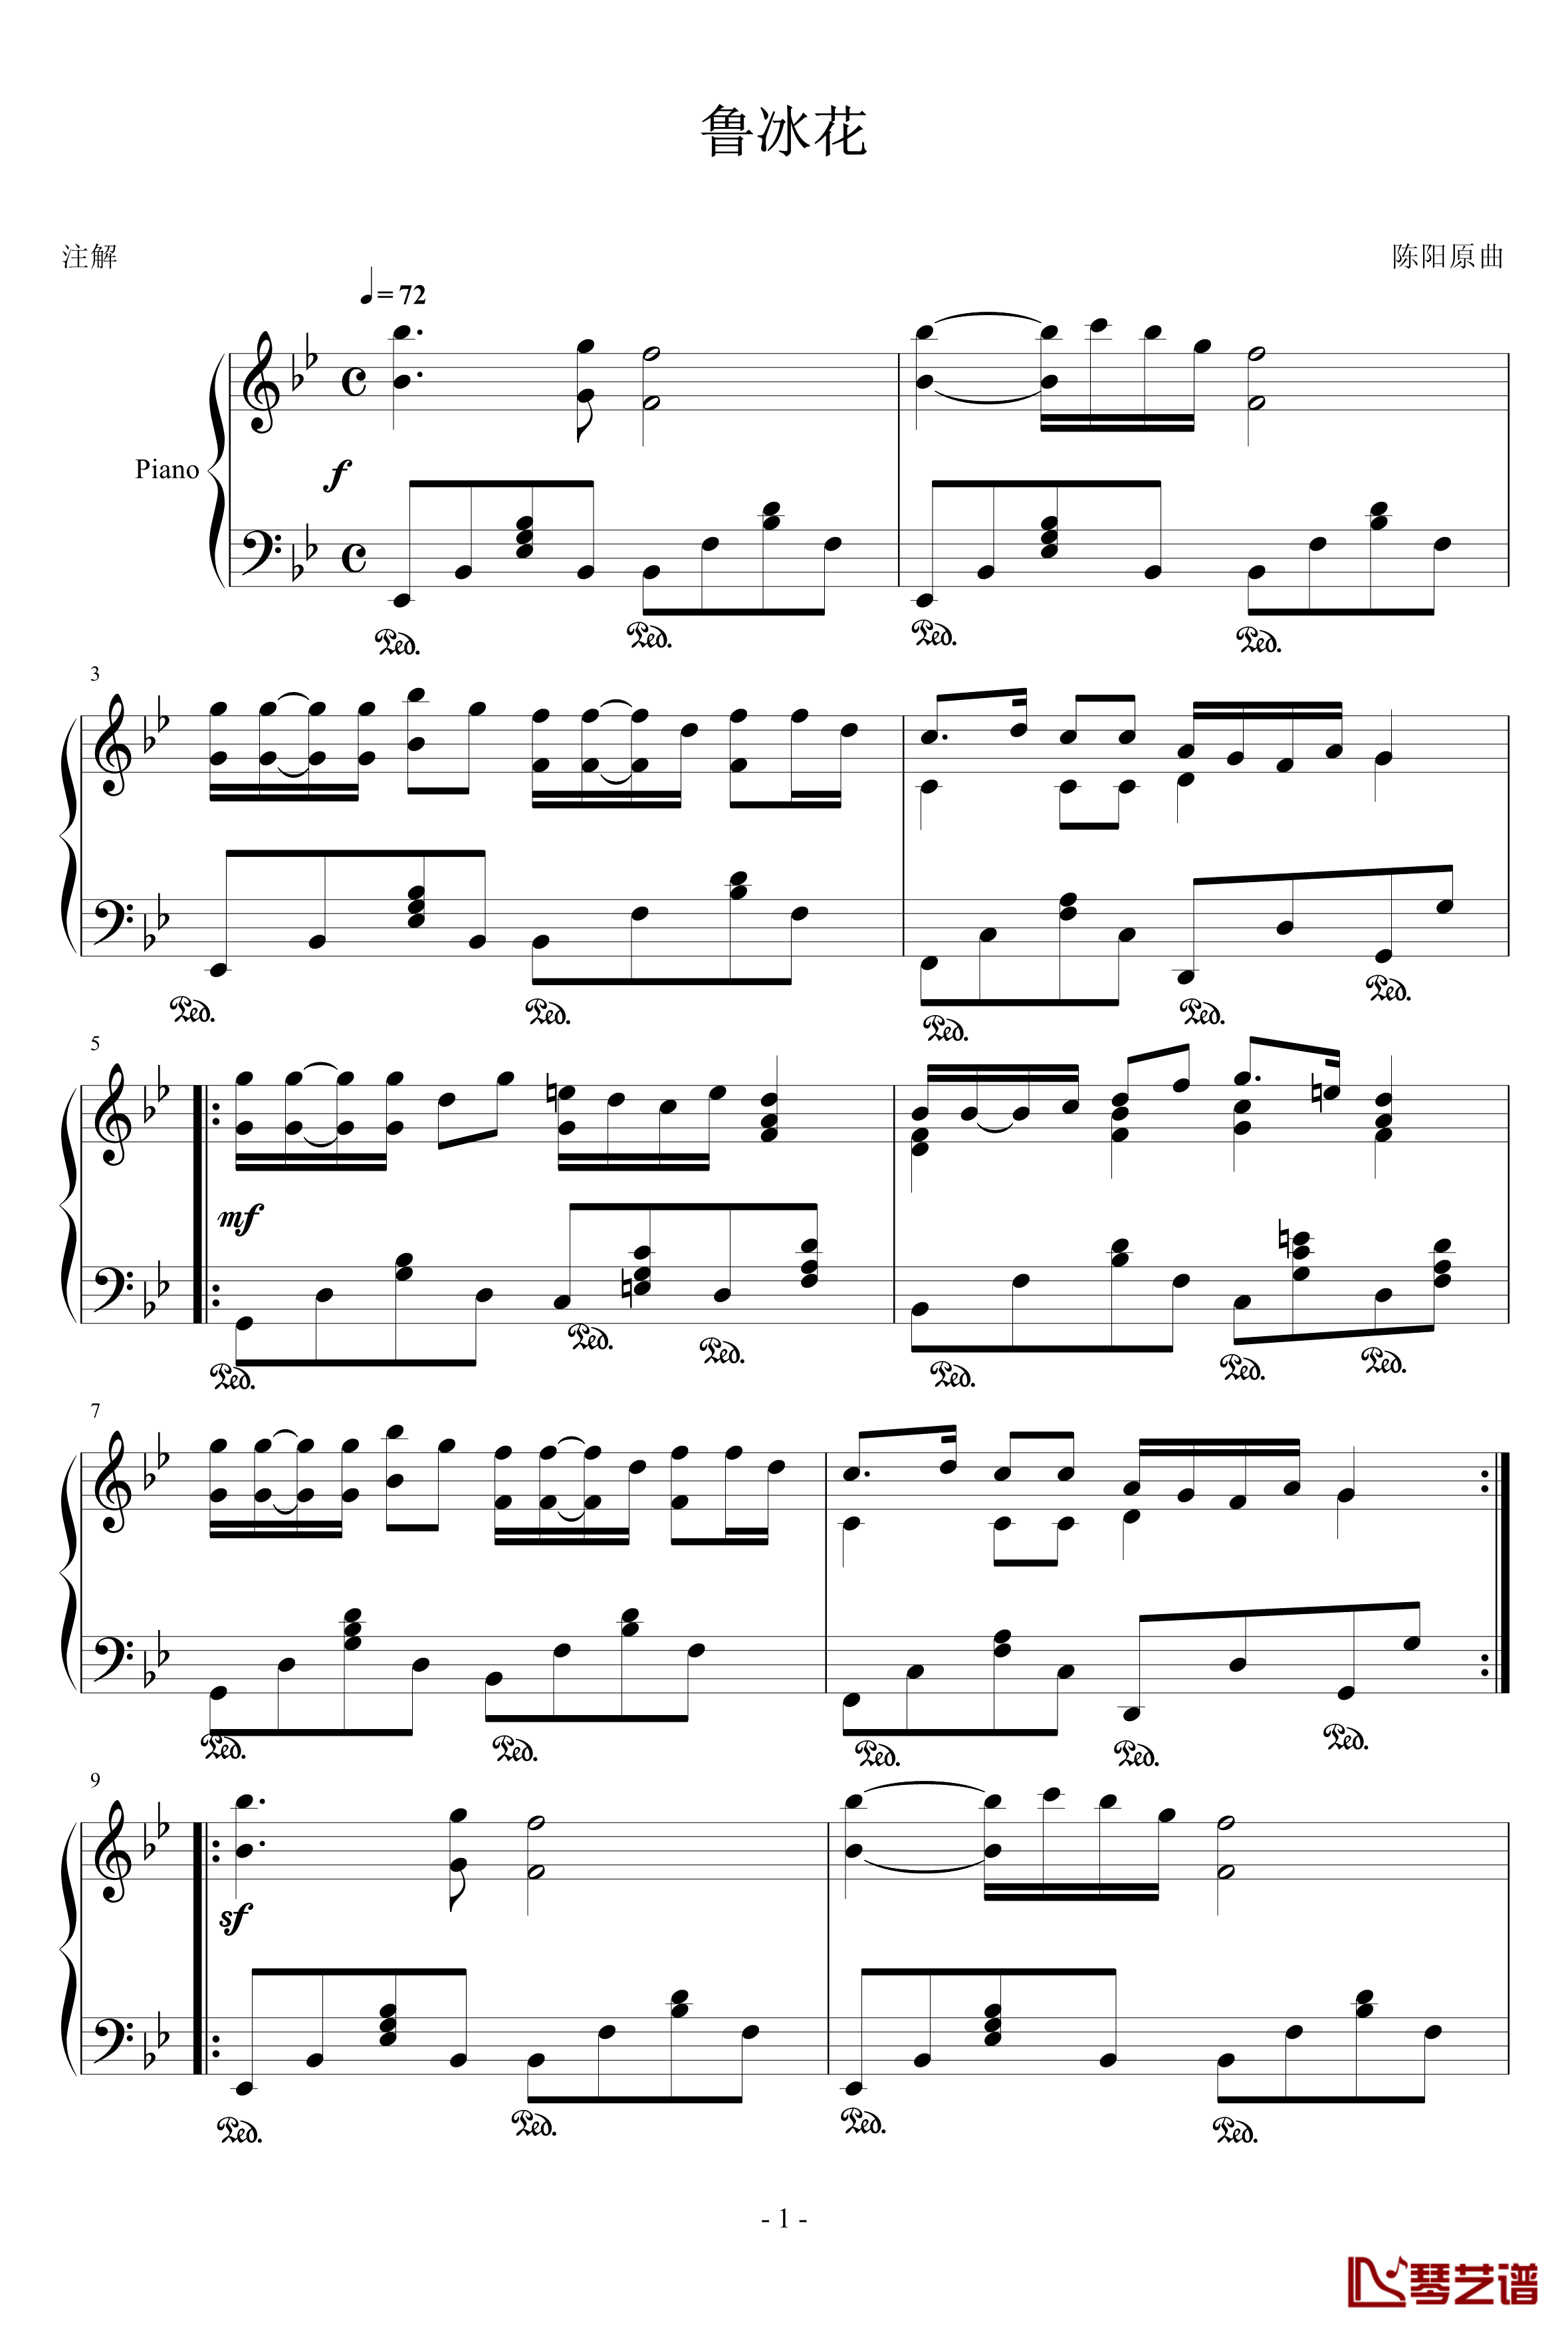 鲁冰花钢琴谱-古阿明1